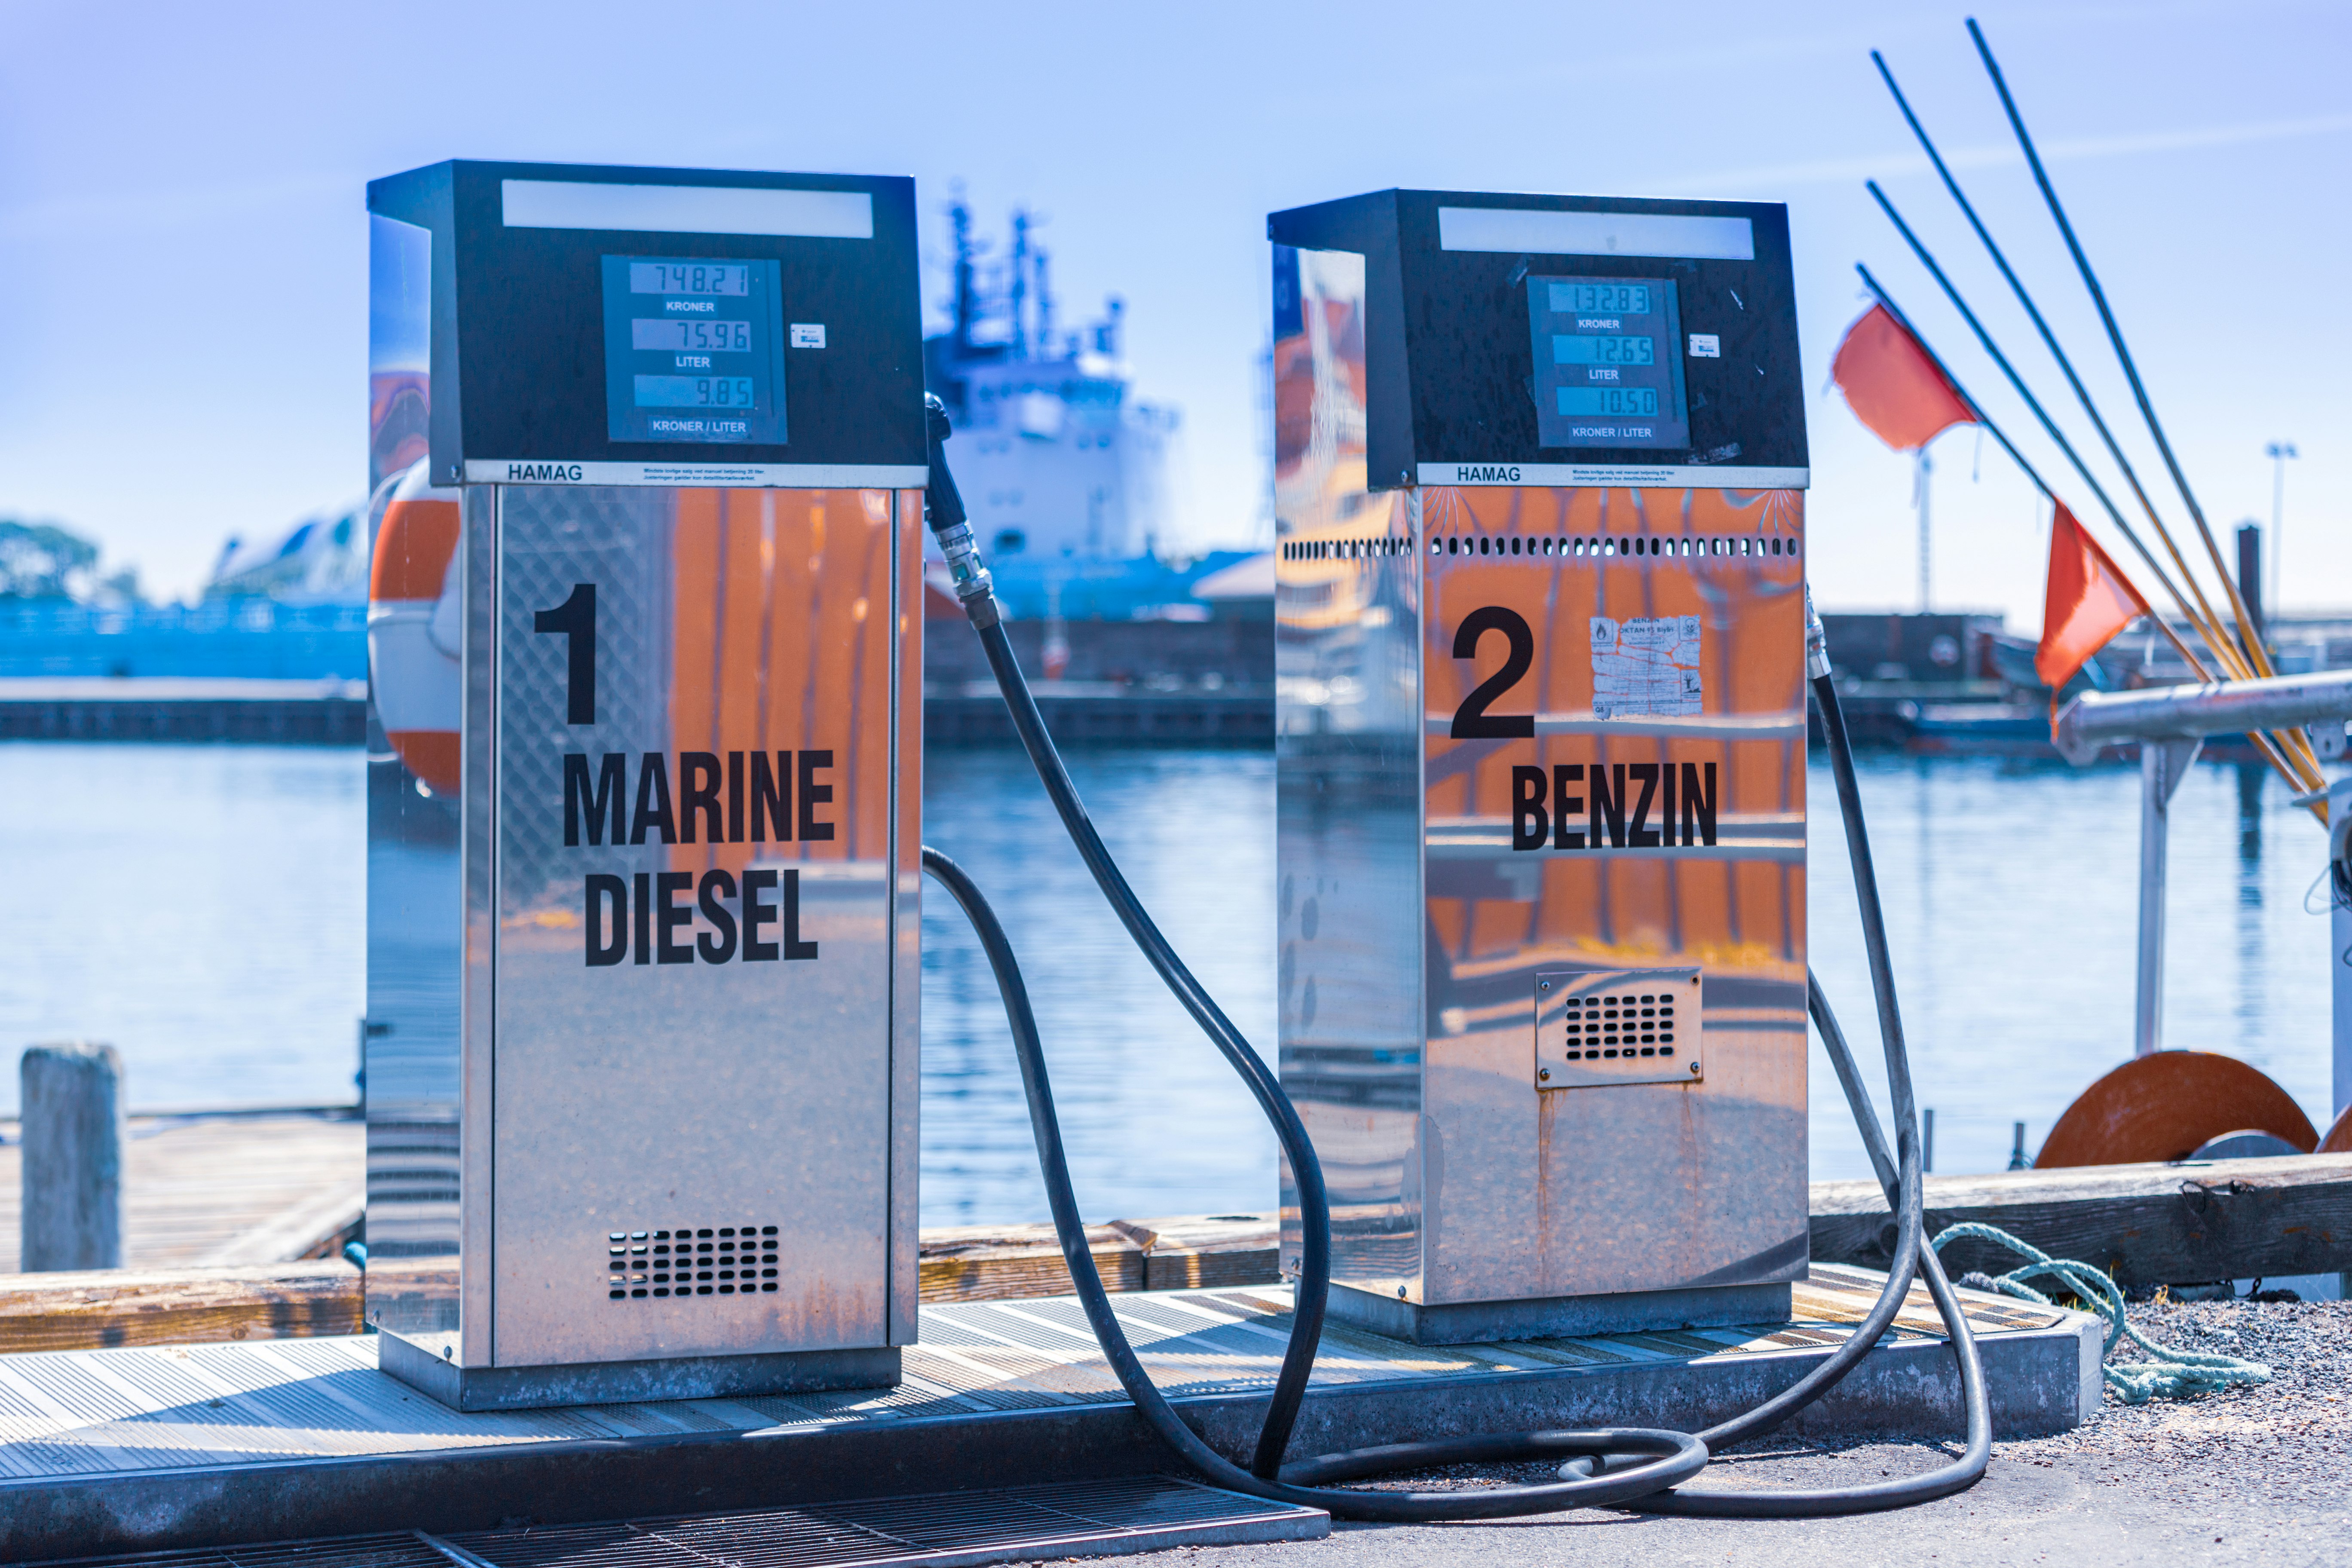 benzinové čerpadlo v přístavu Faaborg s dodávkou nafty i benzinu. Obě pumpy jsou samoobslužné.